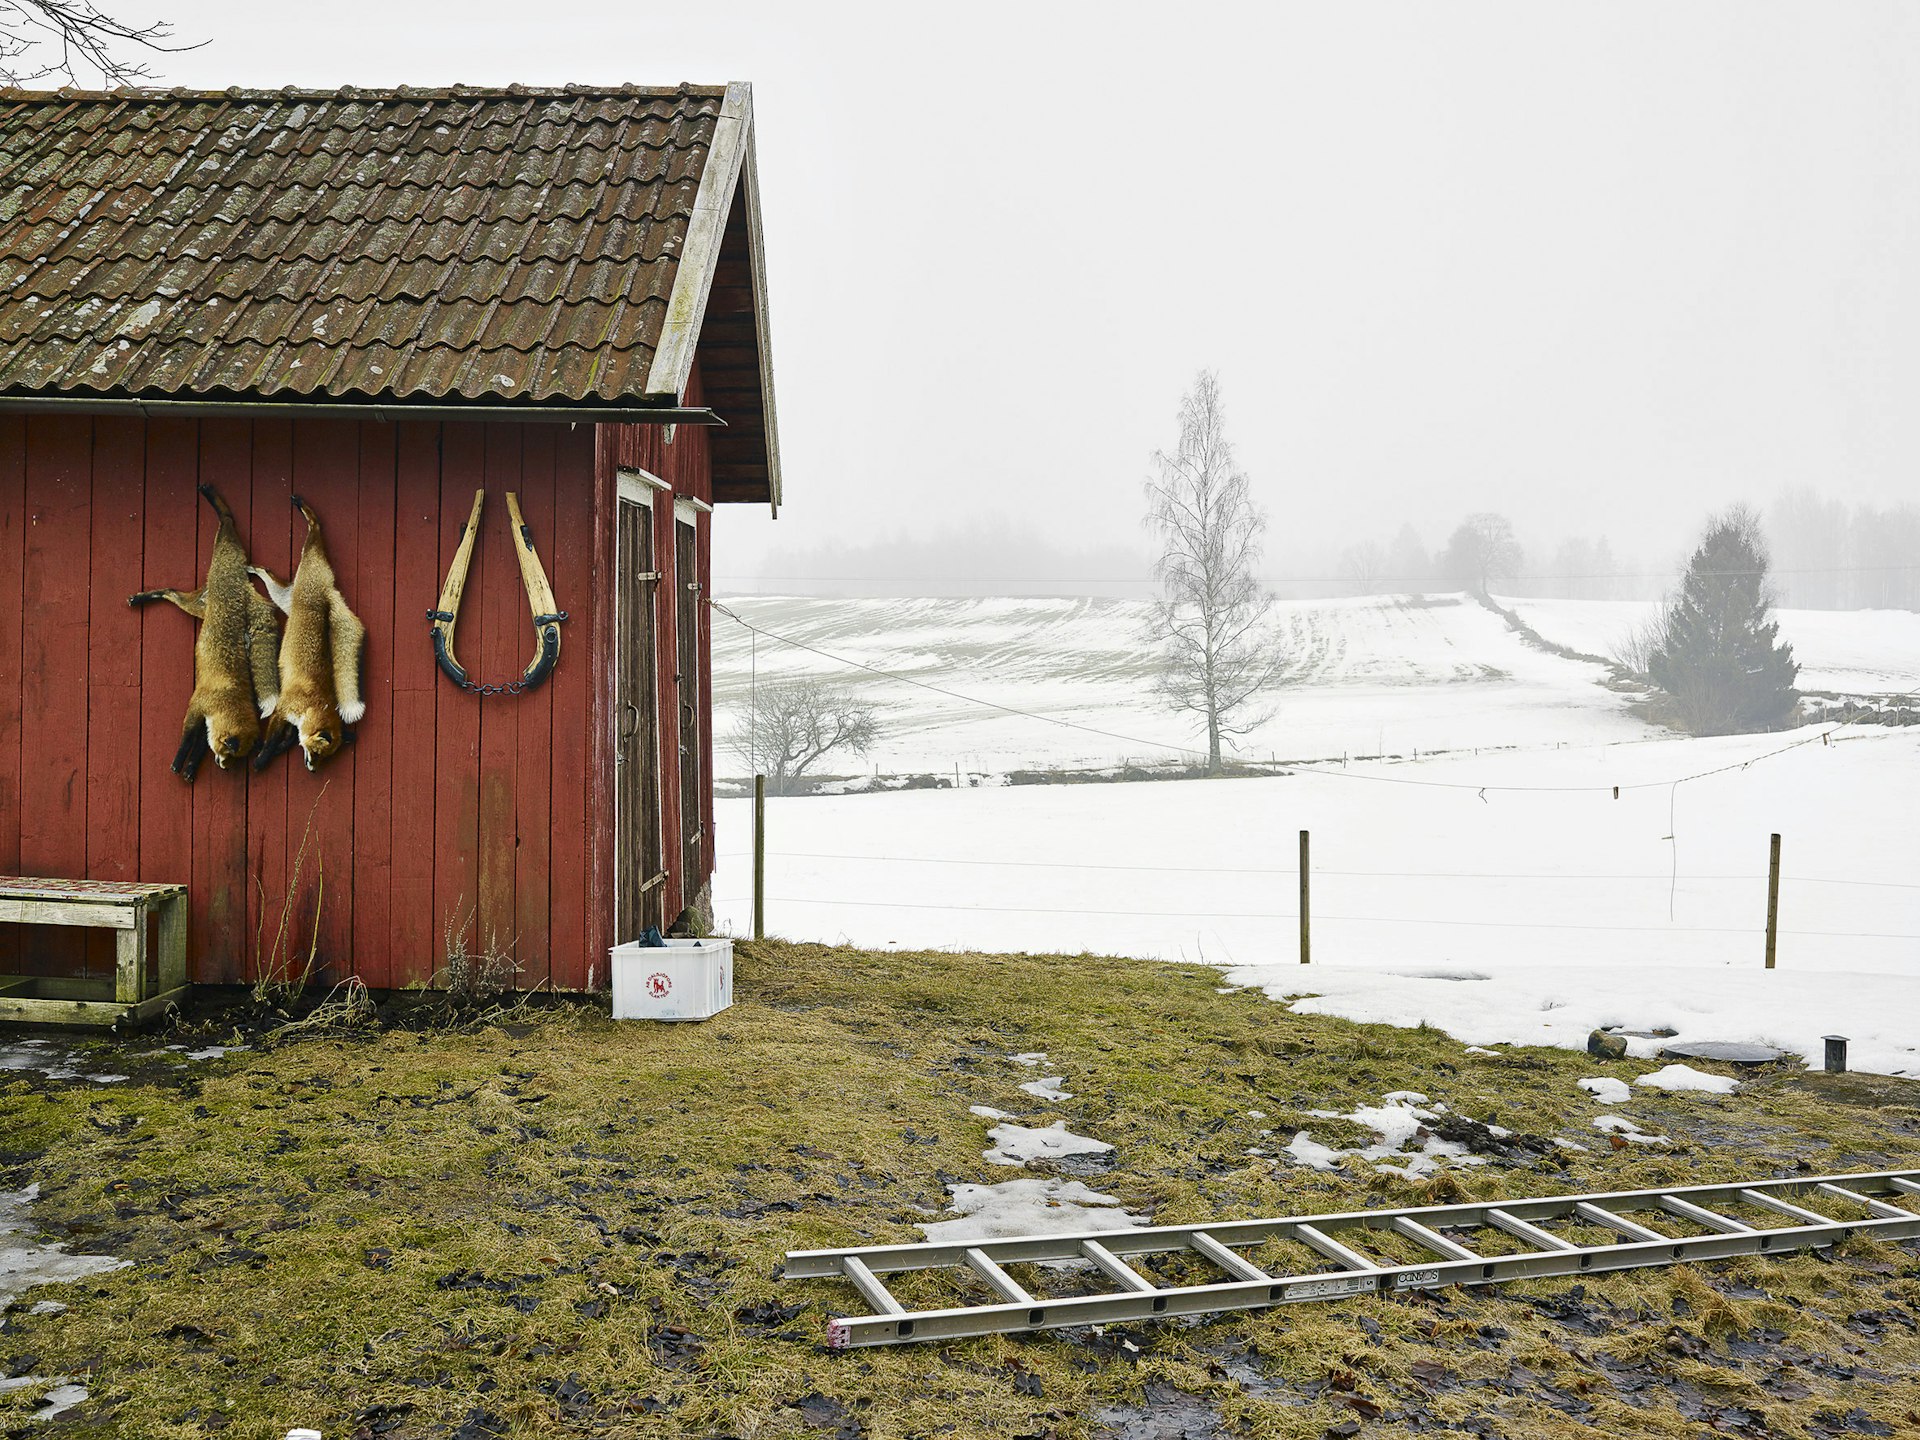 Od, Västergötland, Sweden, March 14, 2011